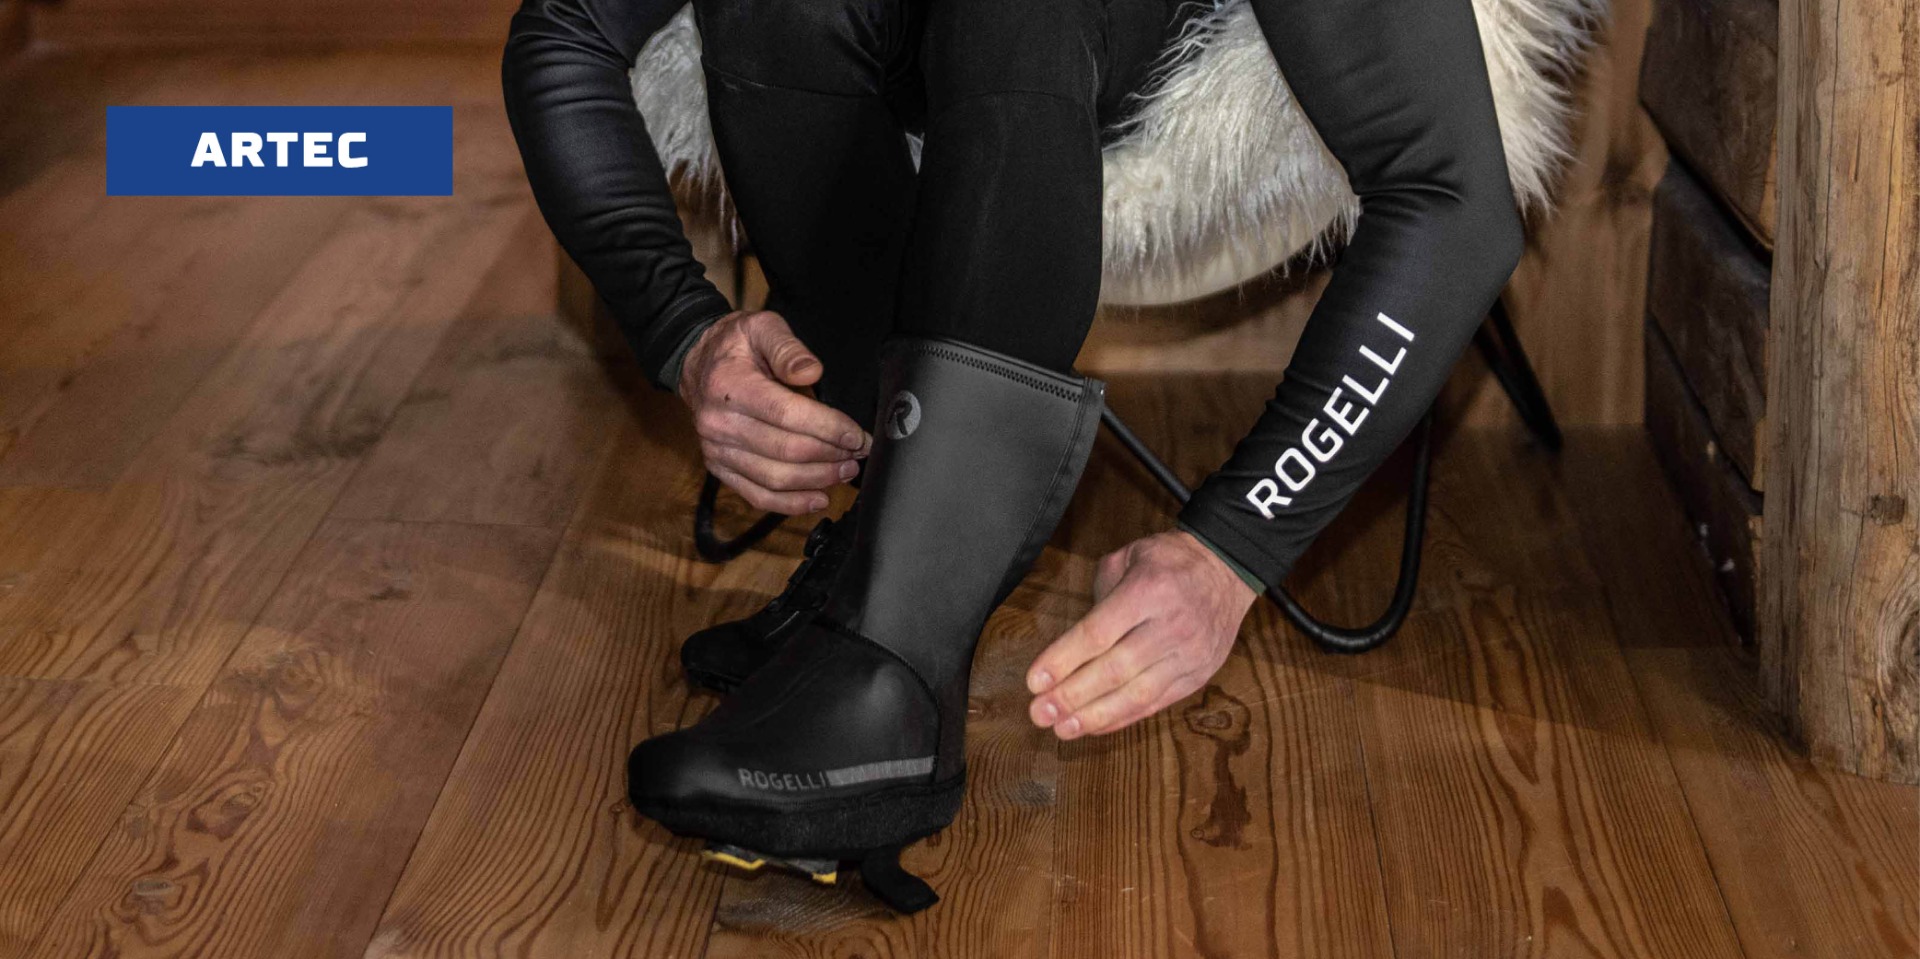 Het aantrekken van Rogelli Artec overschoenen voor bescherming tijdens het wielrennen